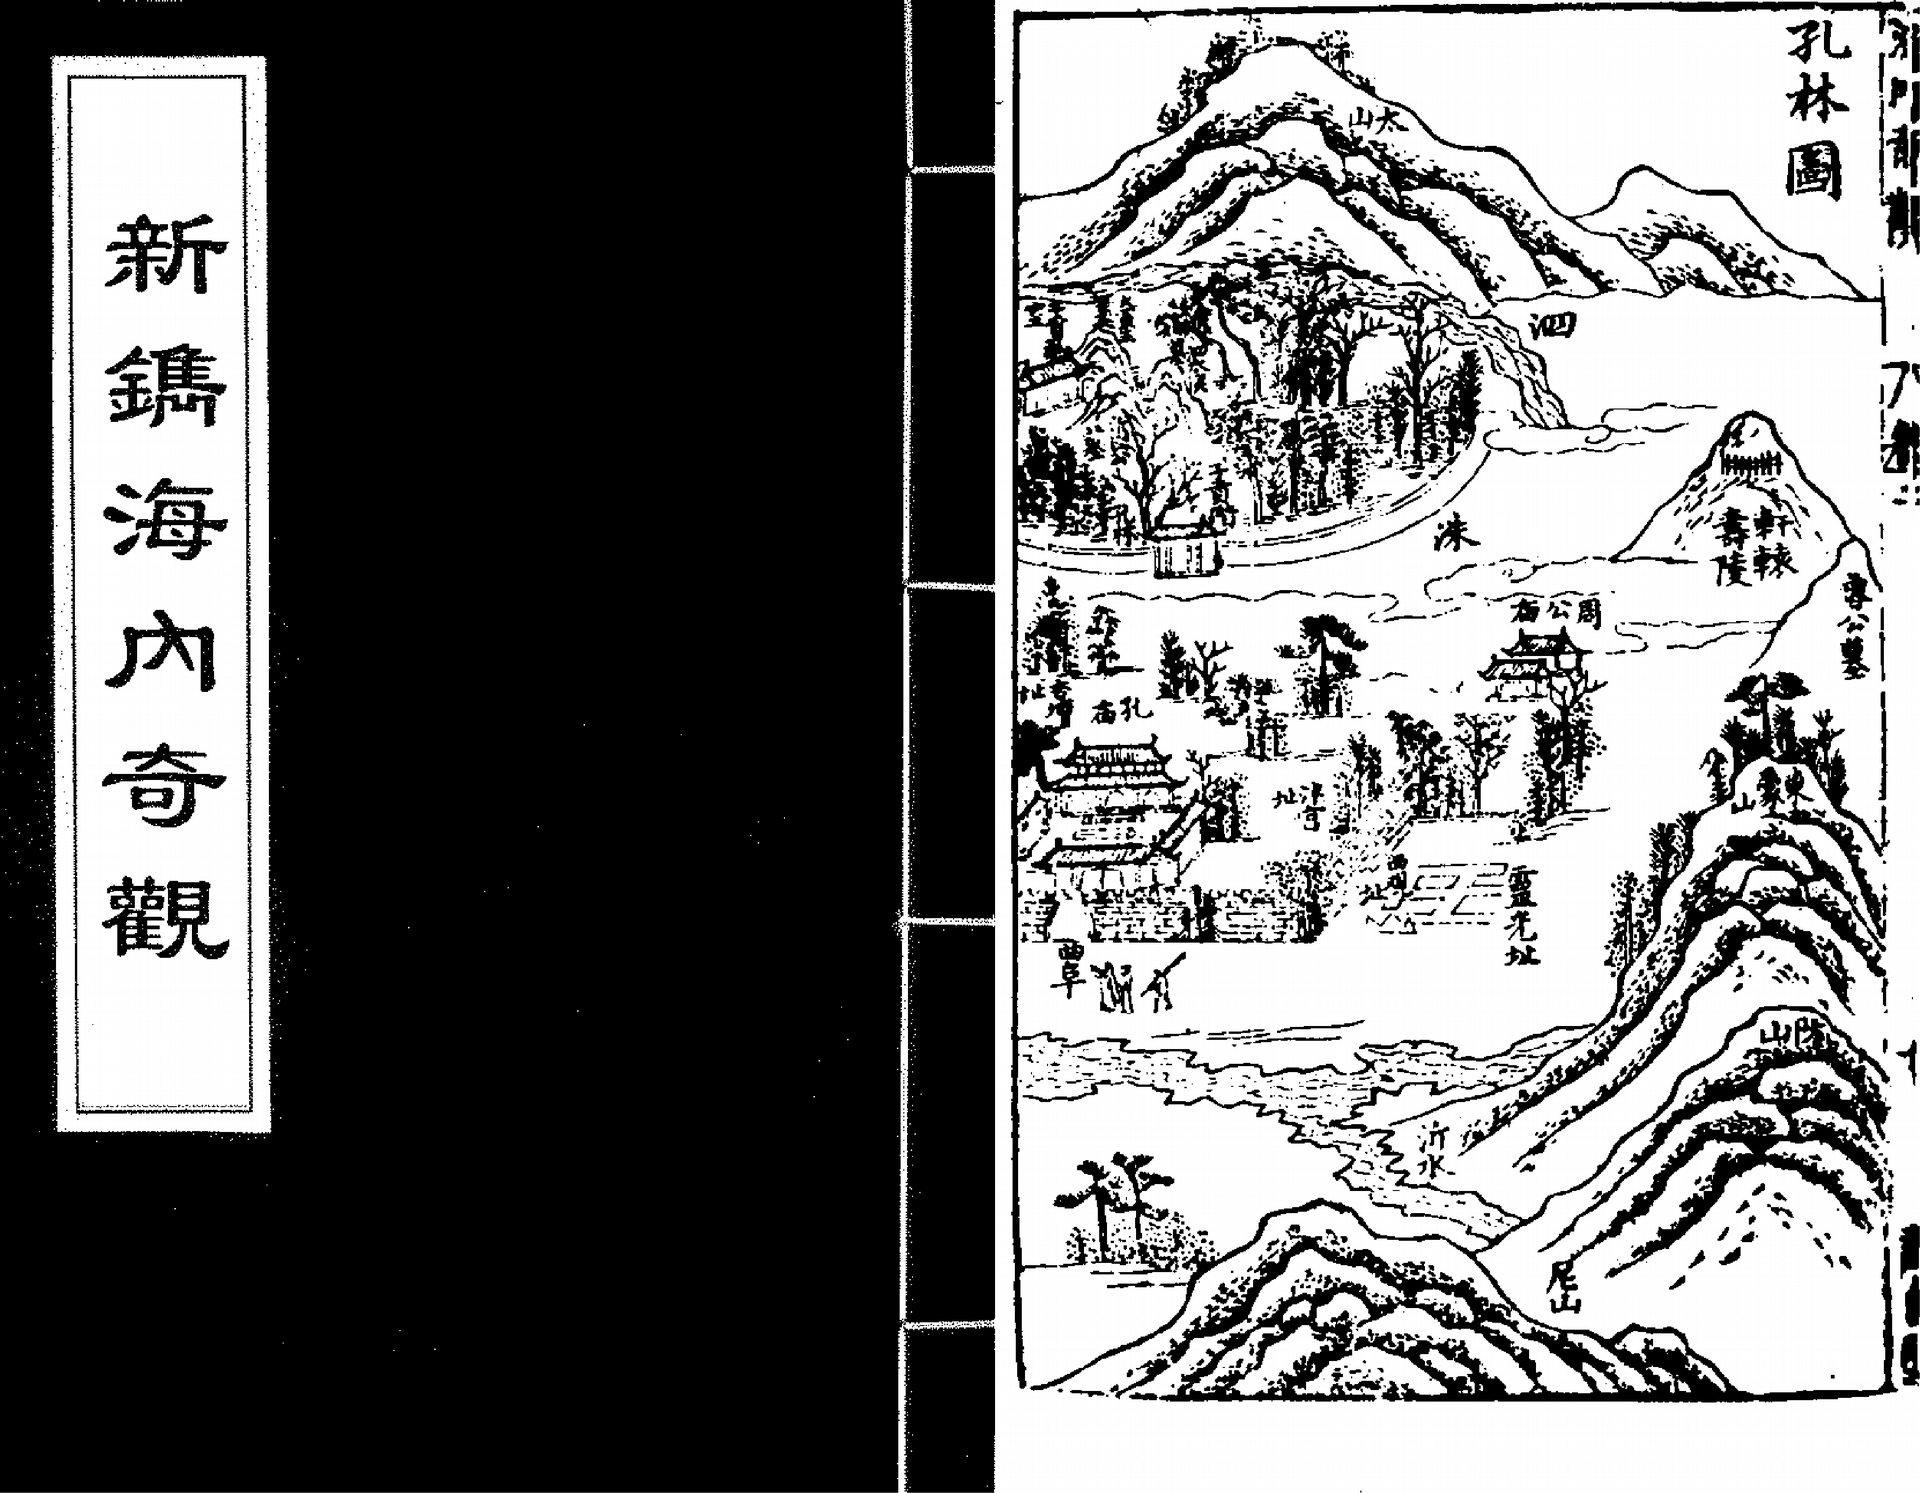 明代楊爾曾的旅遊書《新鐫海內奇觀》，不只透過文字描繪遊覽心得，也畫出具象的風景引人嚮往，筆法有別於強調意象的文人山水畫。 資料來源│中國哲學書電子化計劃 